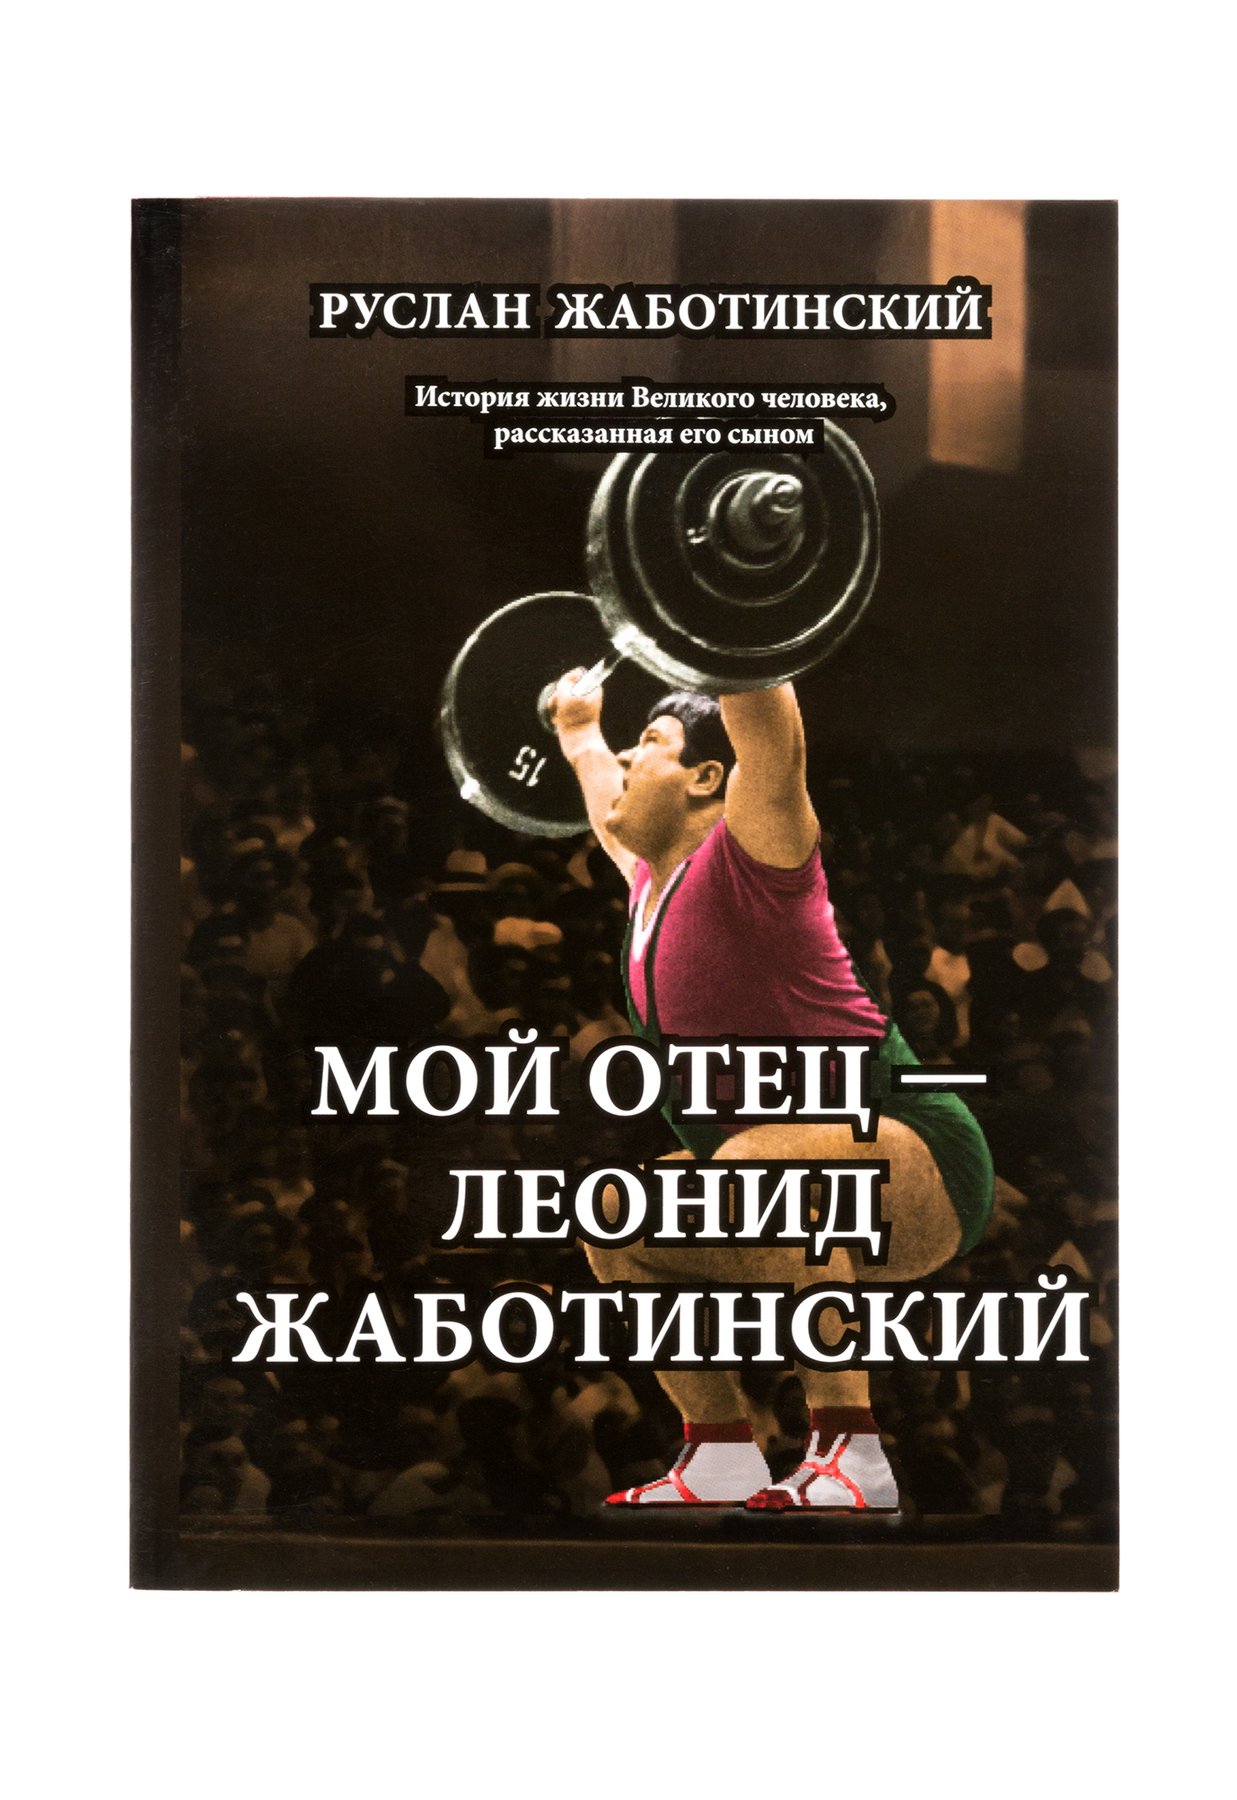 Книга Мой отец Леонид Жаботинский, PDF